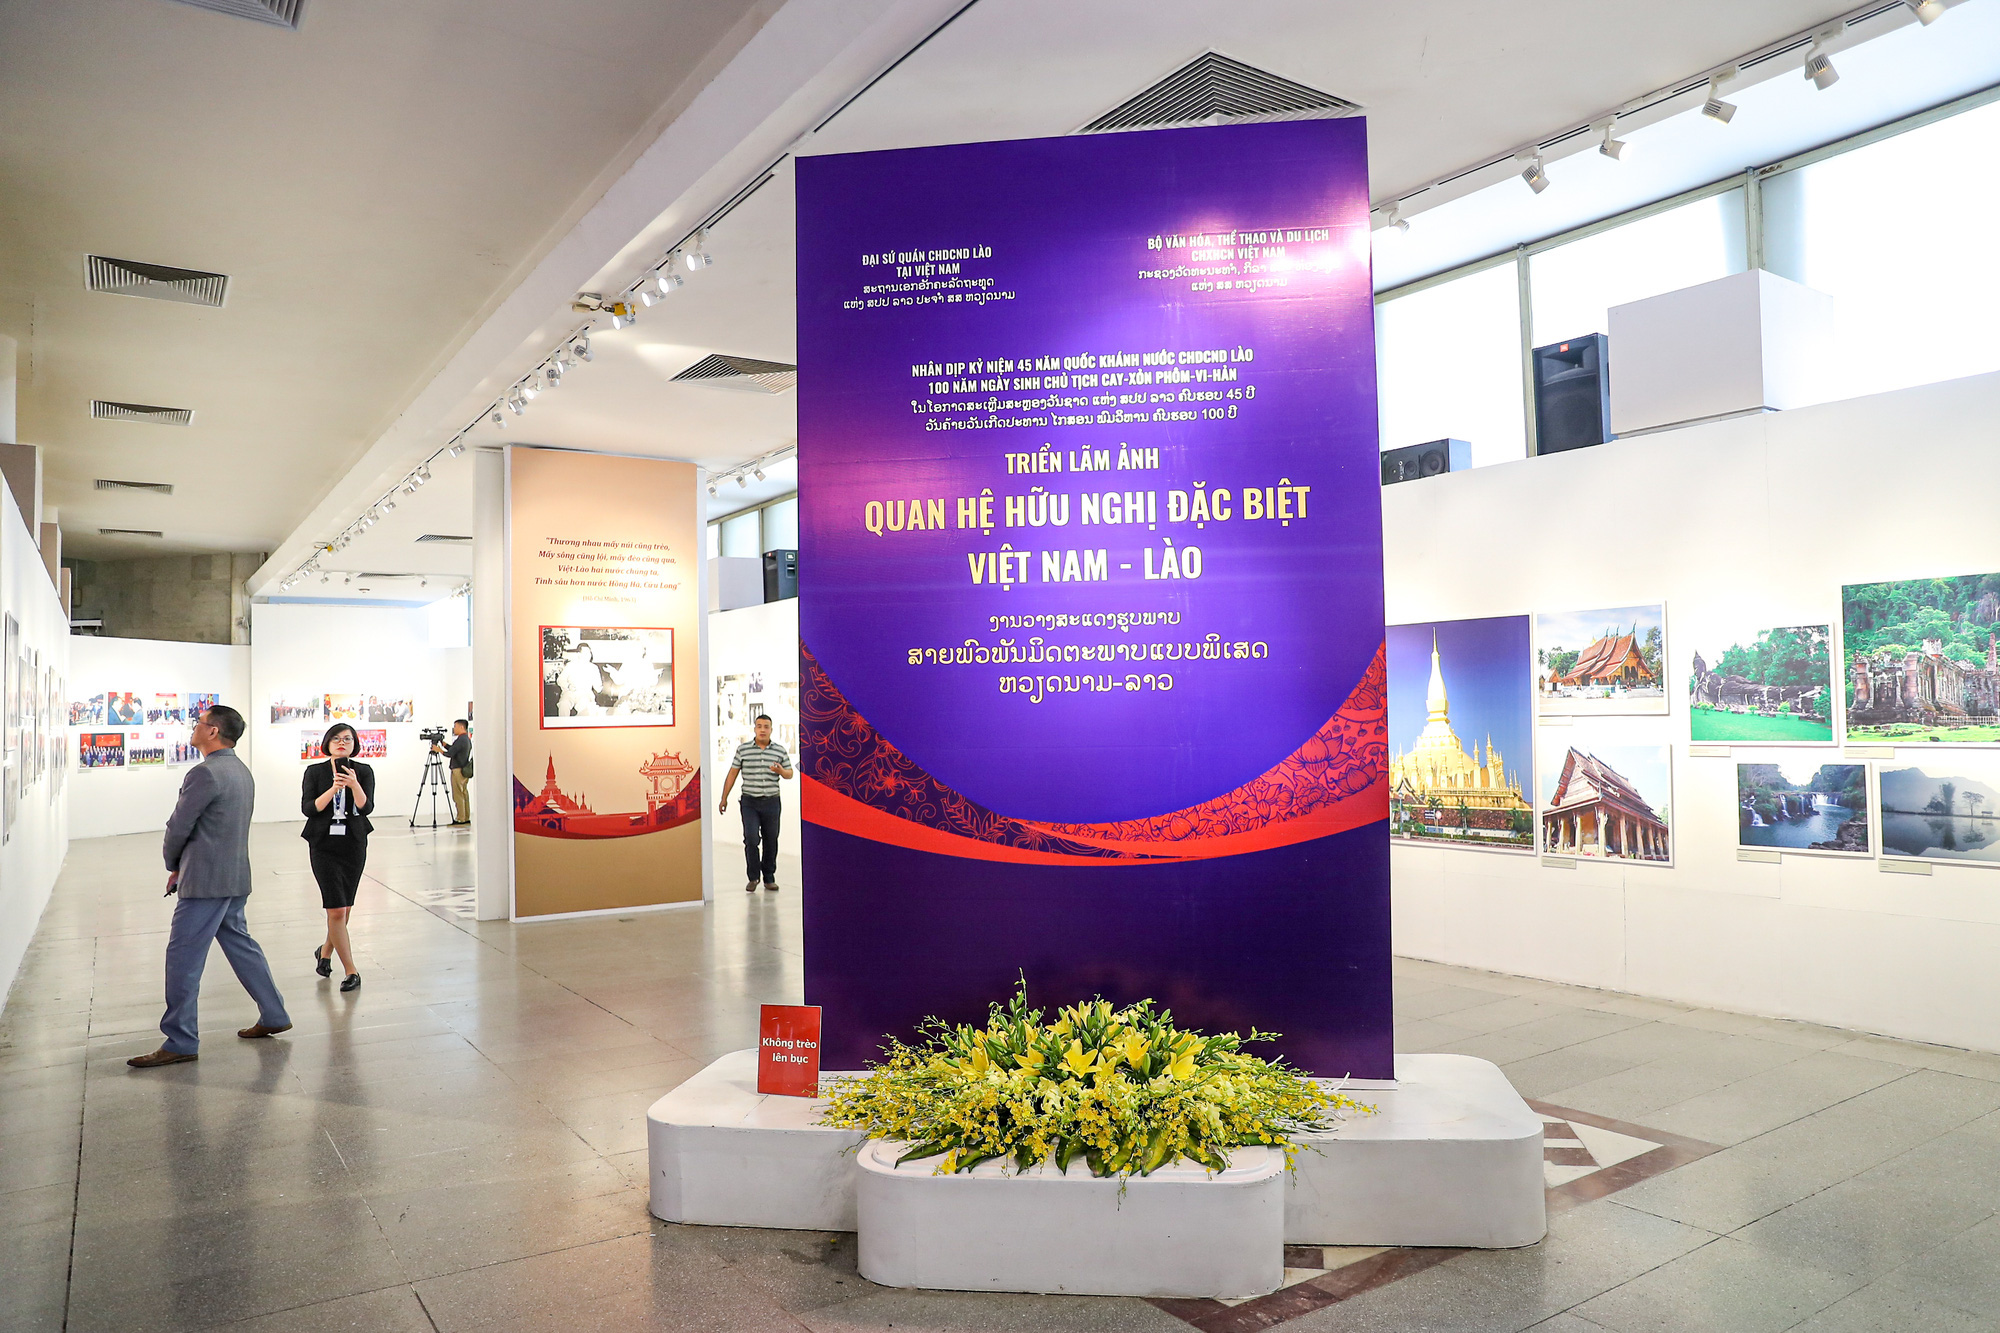 Khai mạc triển lãm ảnh quan hệ hữu nghị đặc biệt Việt Nam - Lào - Ảnh 5.